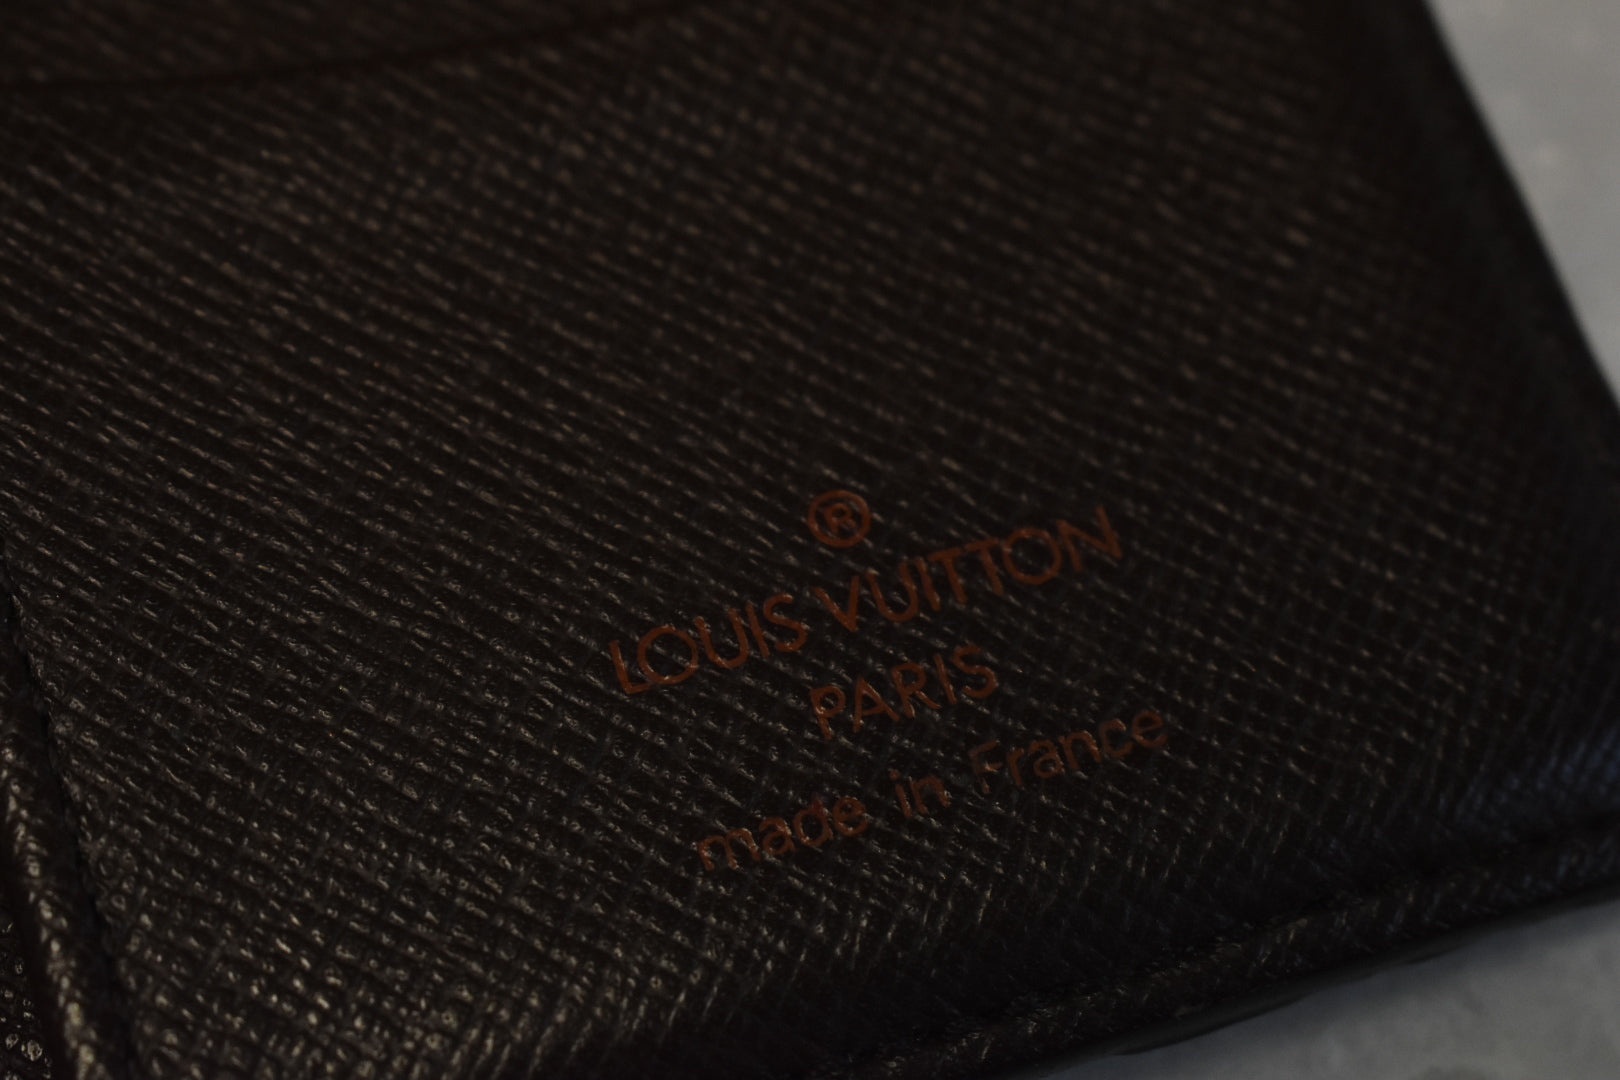 Louis Vuitton Damier Ebene Pocket Organizer – Savonches